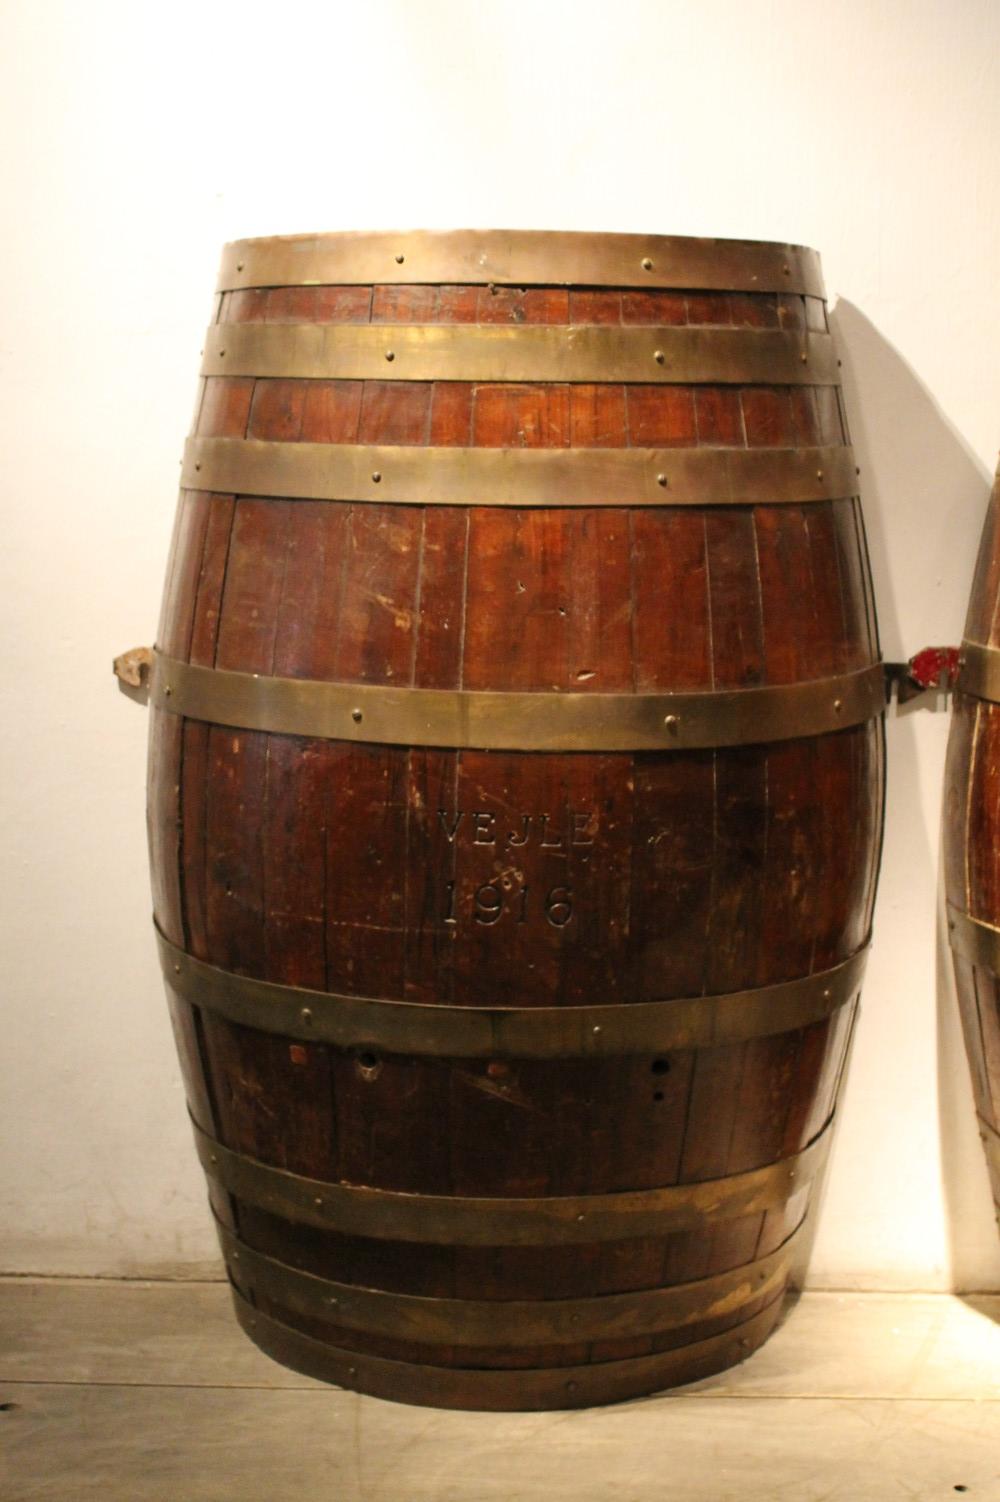 couple of beer barrels - Denmark